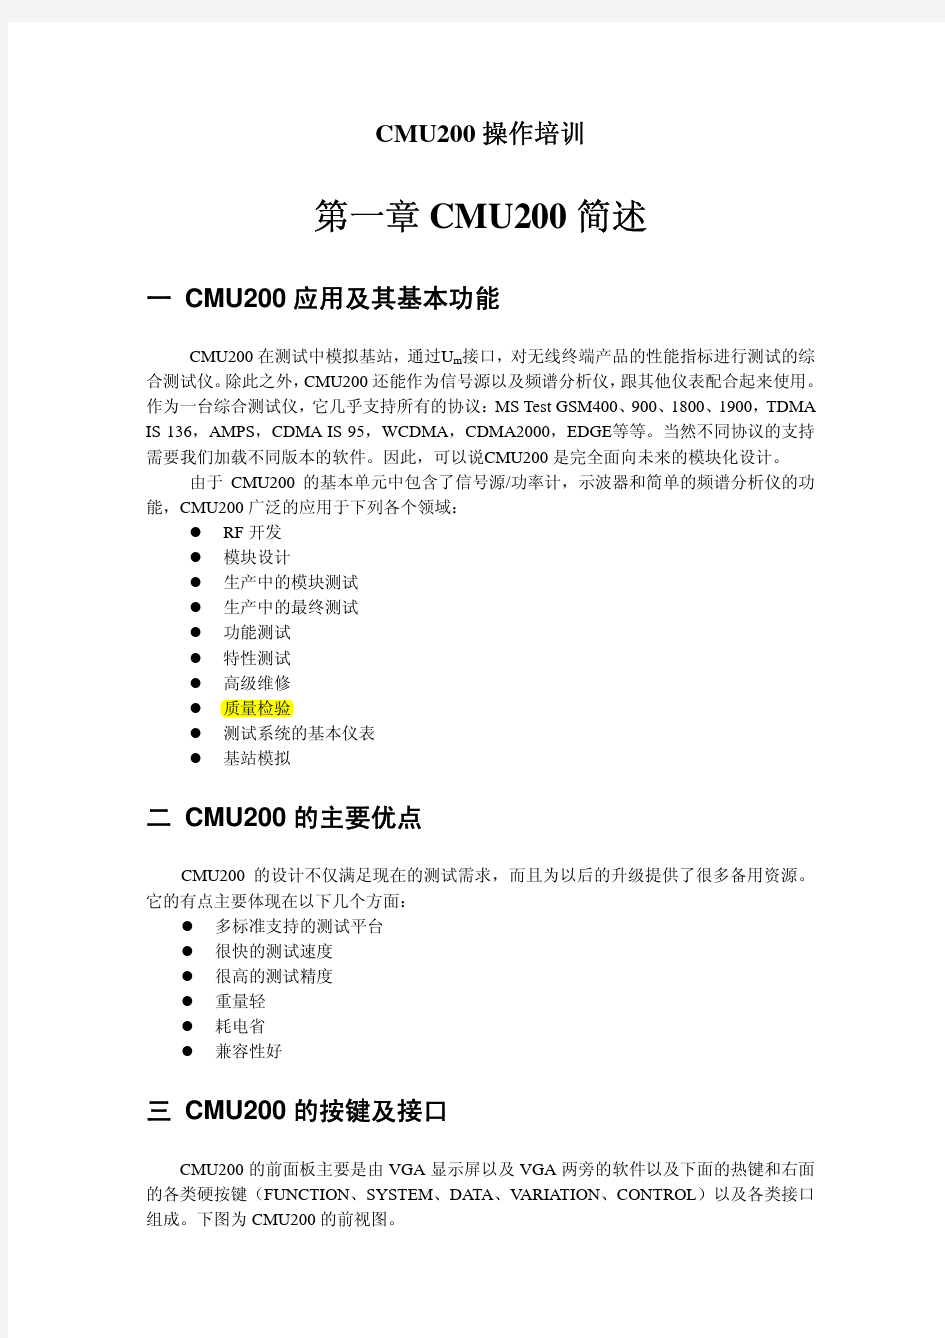 cmu200测试仪使用详解.pdf